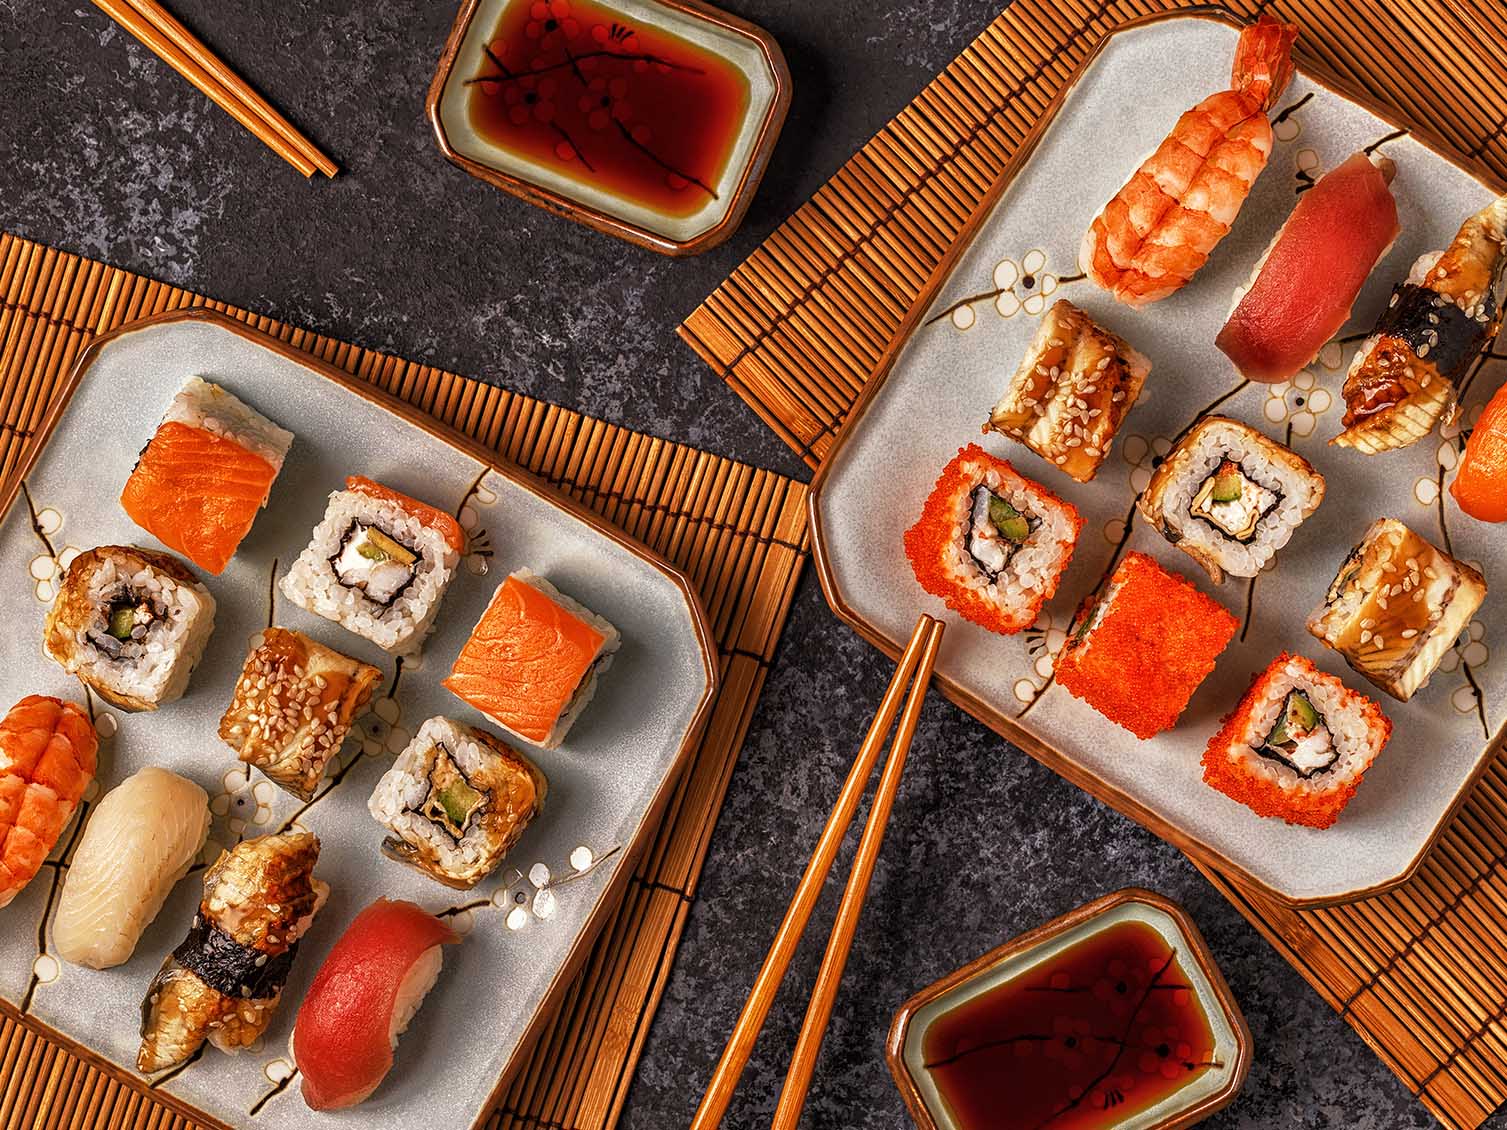 Prepara Sushi Miglior Set Professionale e Rapido Roll e Cibo della Cucina Giapponese a Casa Tua Con Tagli Adatto a Esperti e Principianti Sushi & Roll Set Kit da Sushi Fai da Te 